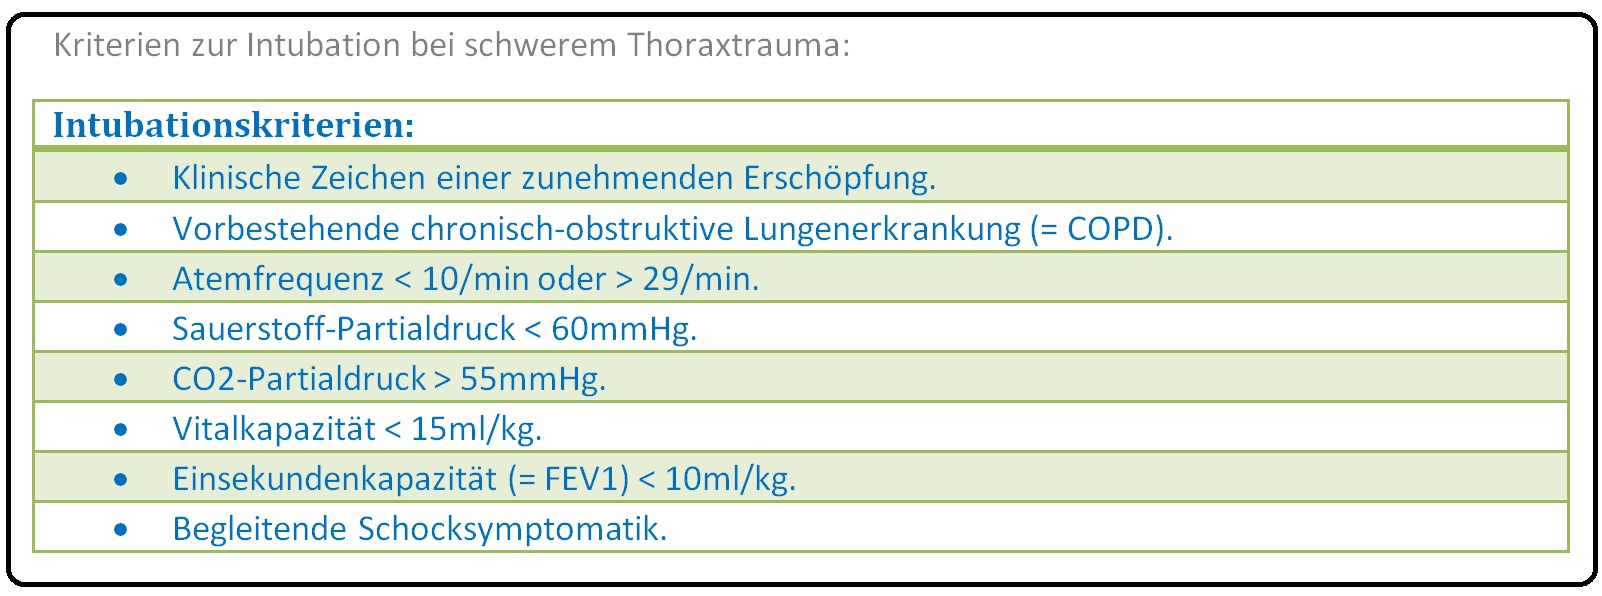 453 Kriterien zur Intubation bei schwerem Thoraxtrauma